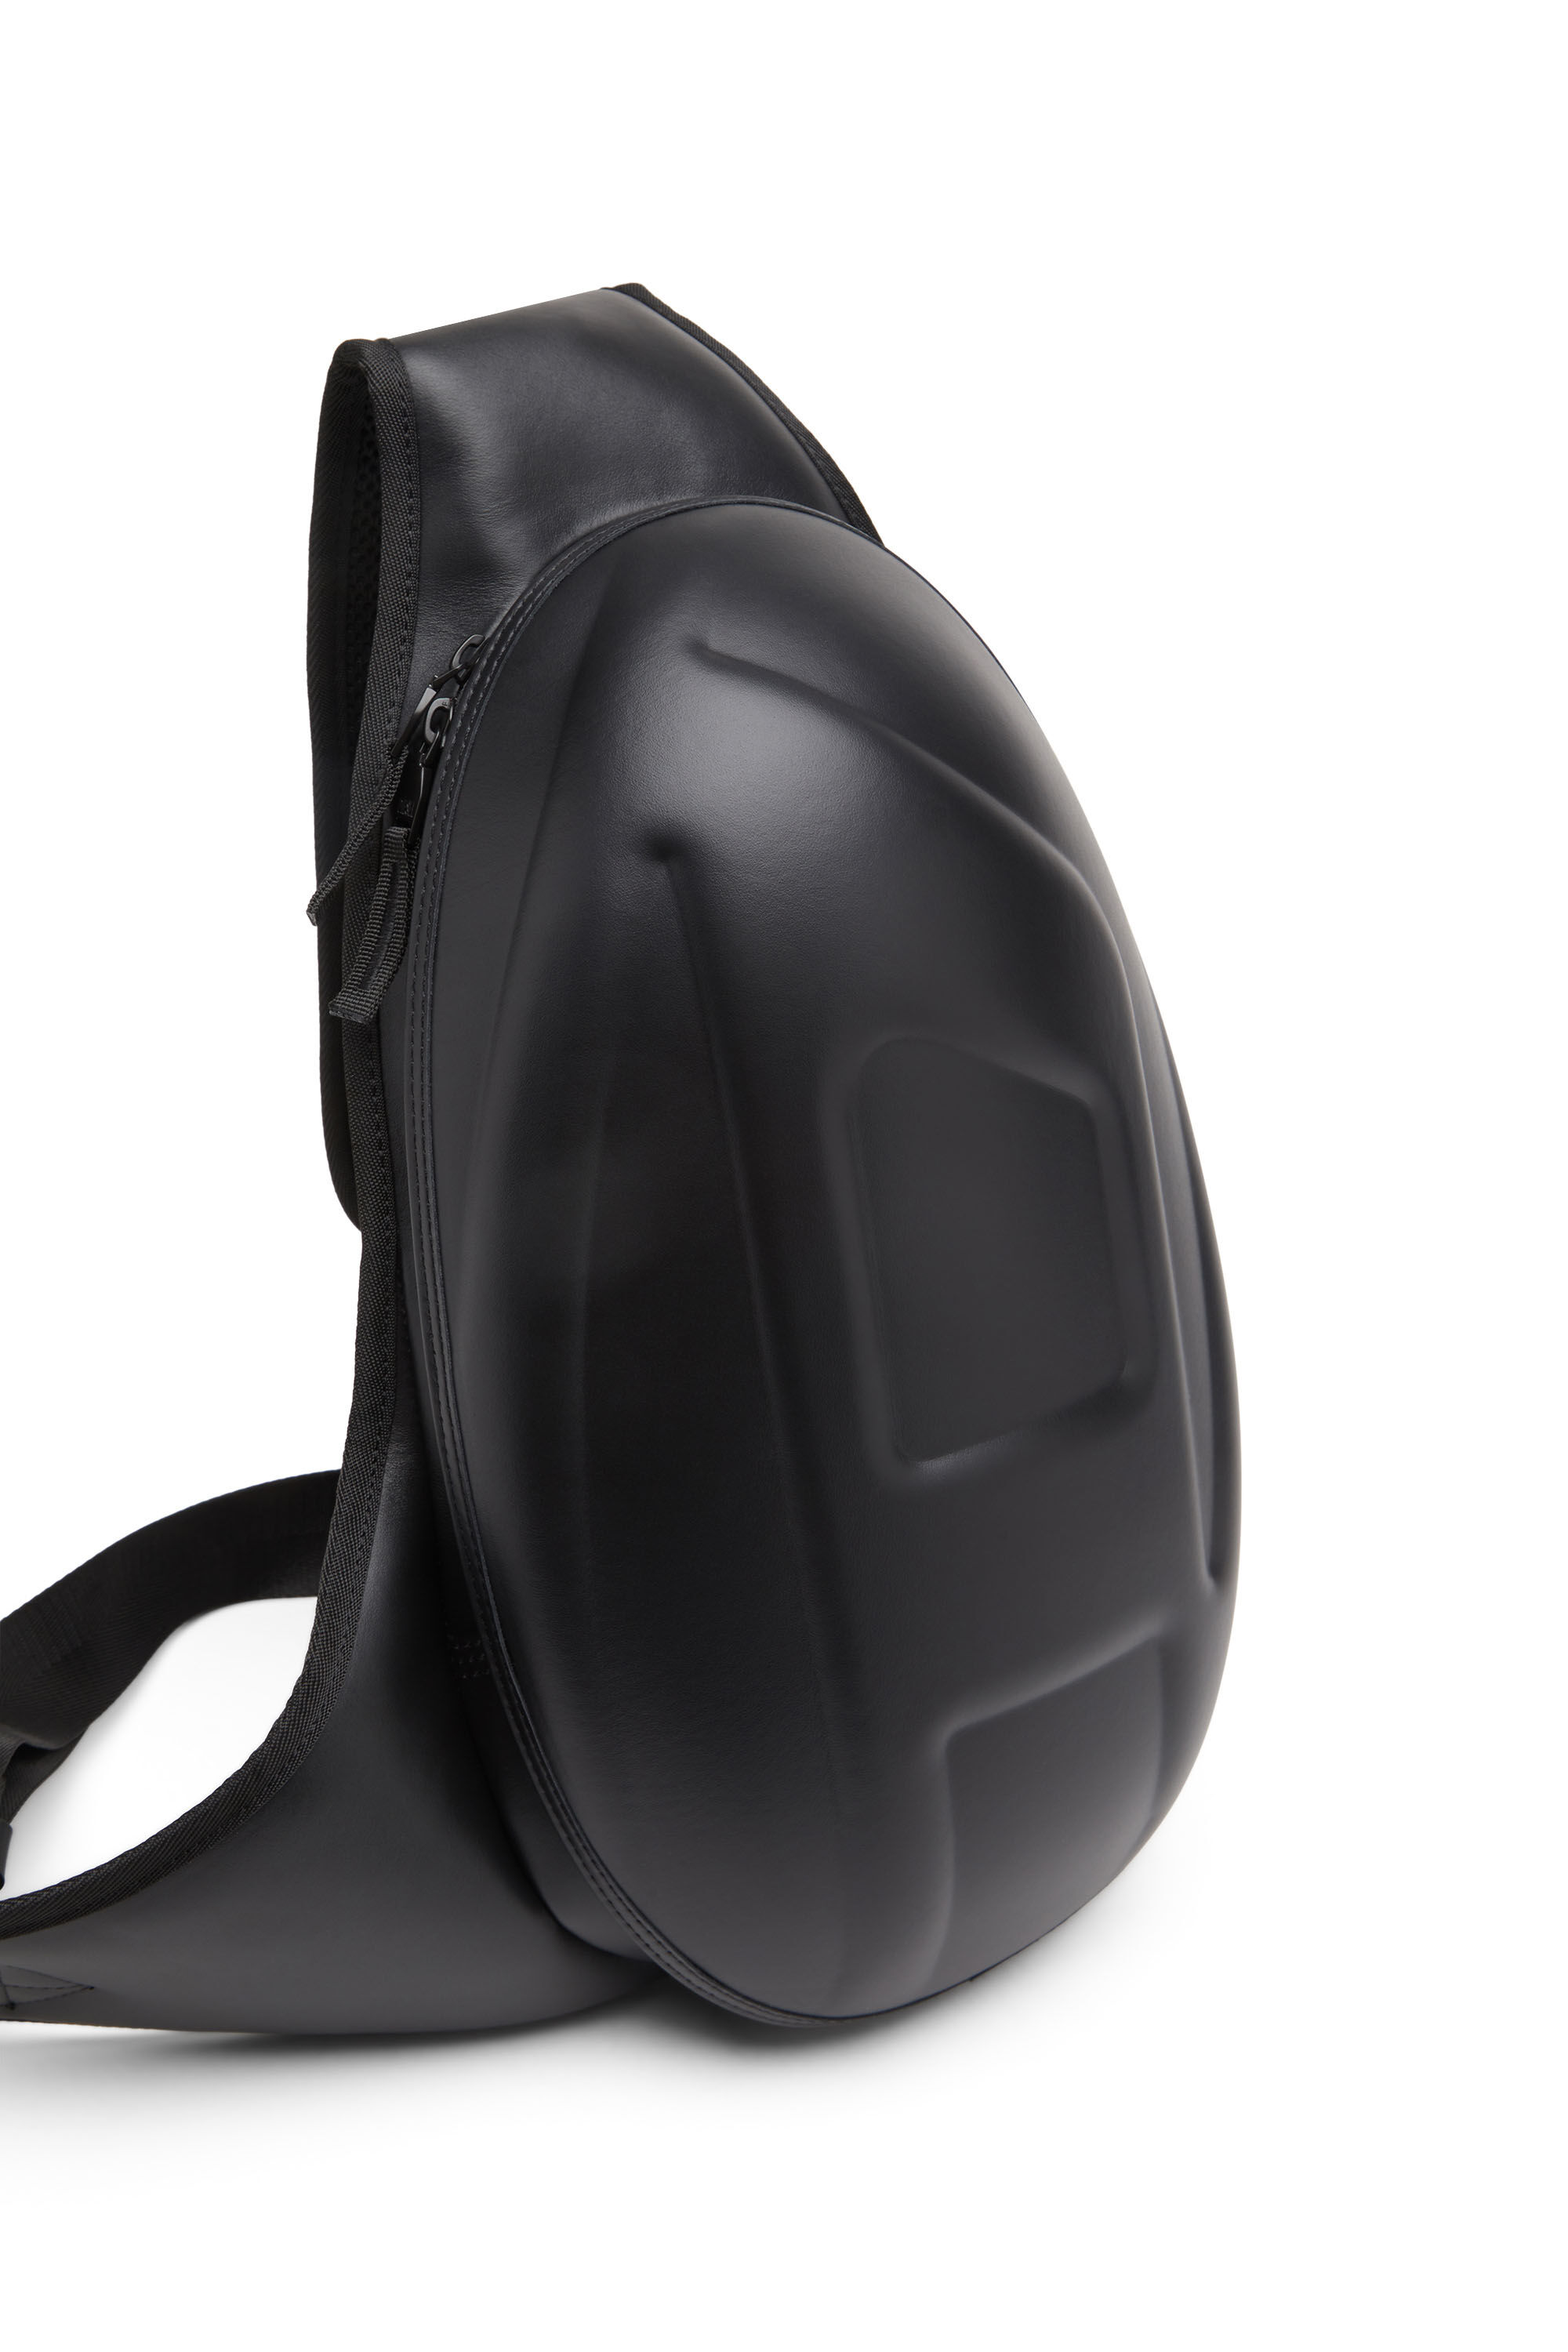 Men's 1DR-Pod Sling Bag - One-shoulder backpack in leather | Black